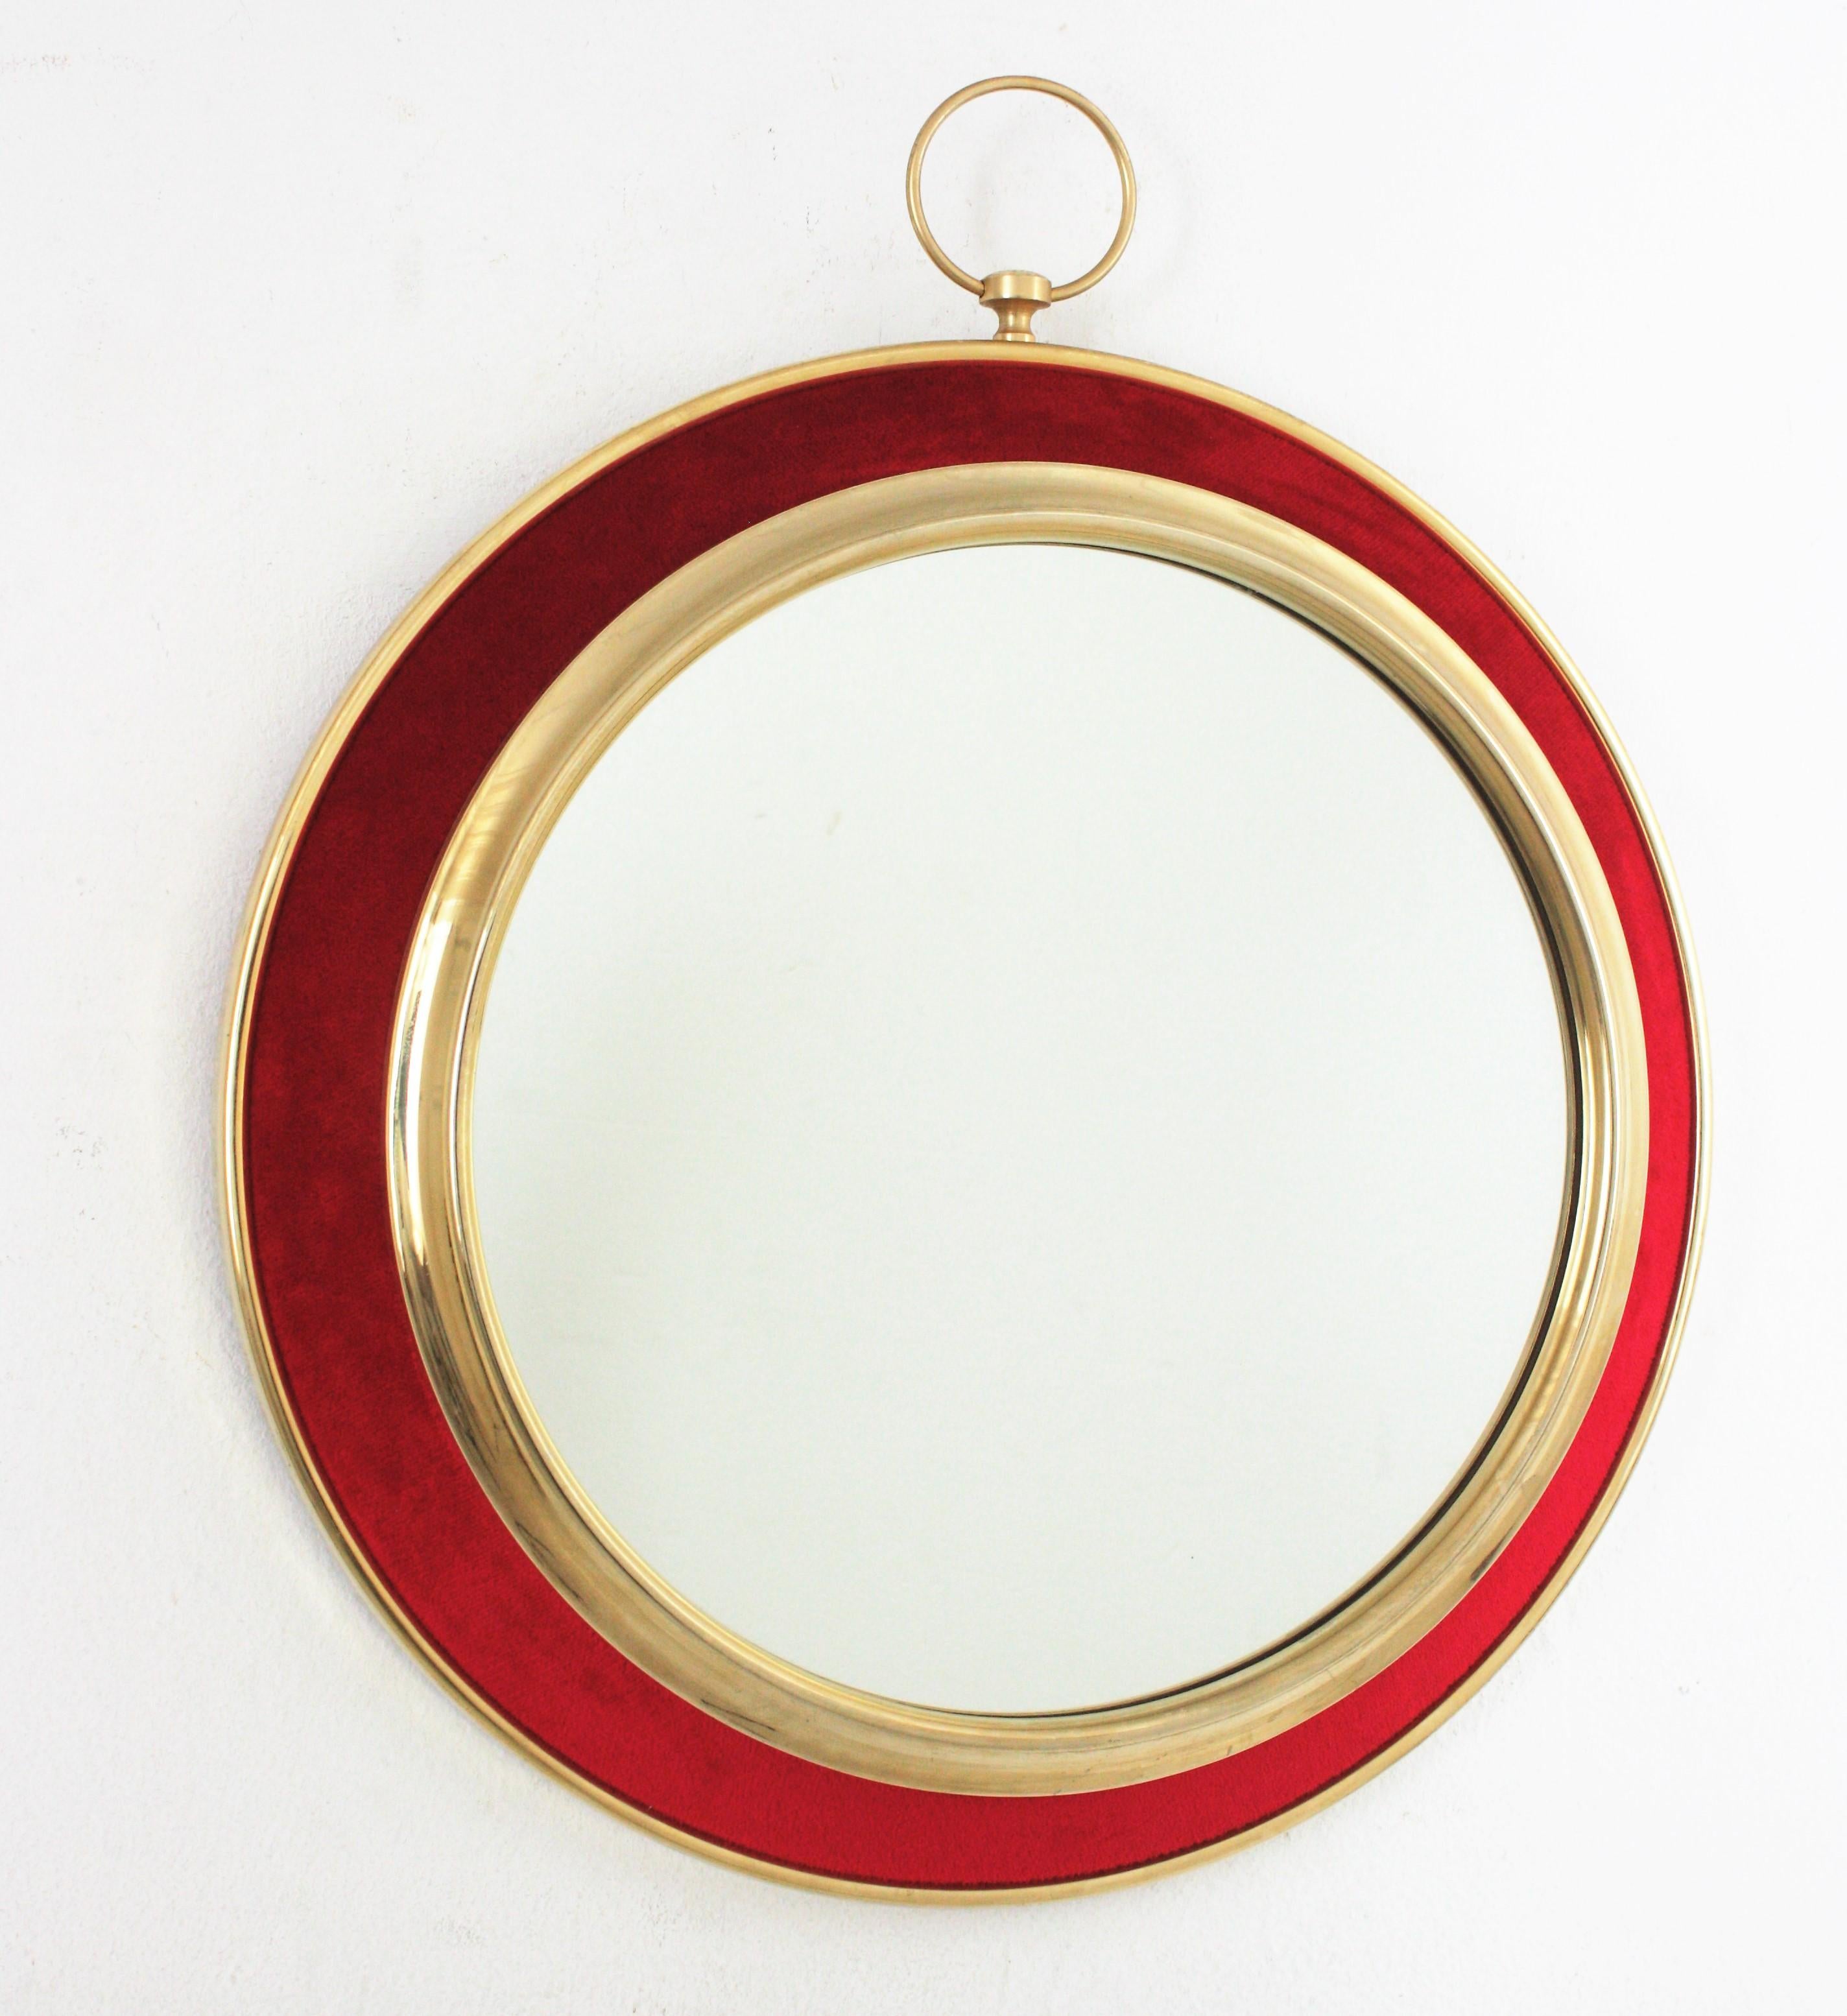 Miroir mural en forme de montre de poche en velours rouge et laiton, Espagne, années 1950-1960
Miroir mural en laiton en forme de montre de poche, dans le style de Piero Fornasetti, dont le design n'a pas perdu de son impact depuis les années